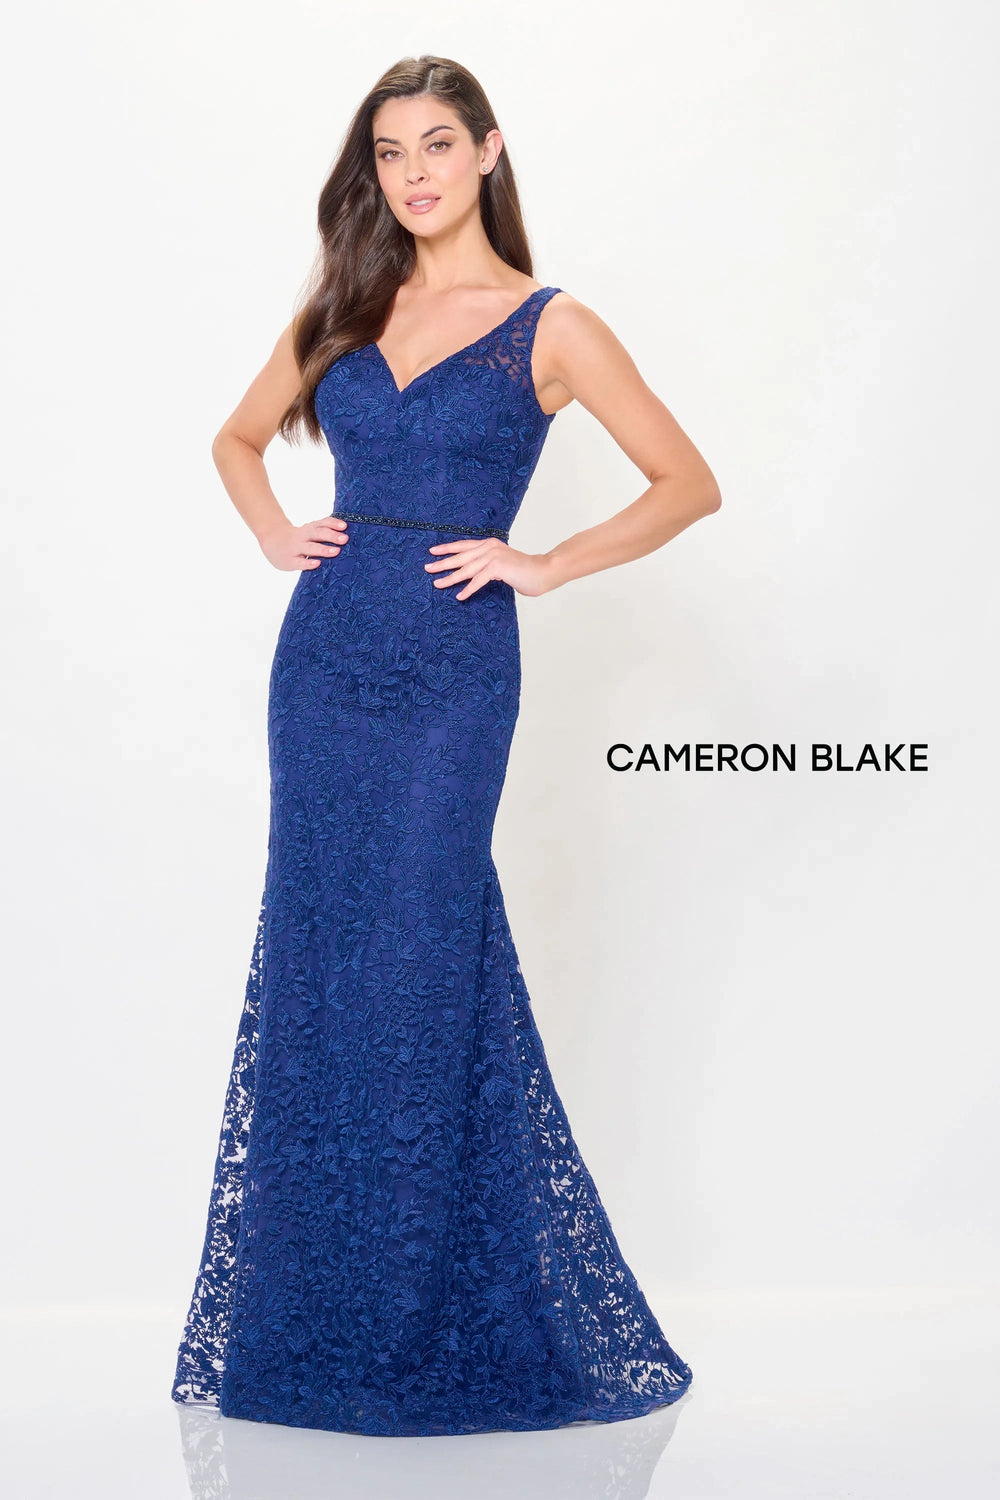 Mon Cheri Cameron Blake Dress Mon Cheri Cameron Blake CB3238 Dress